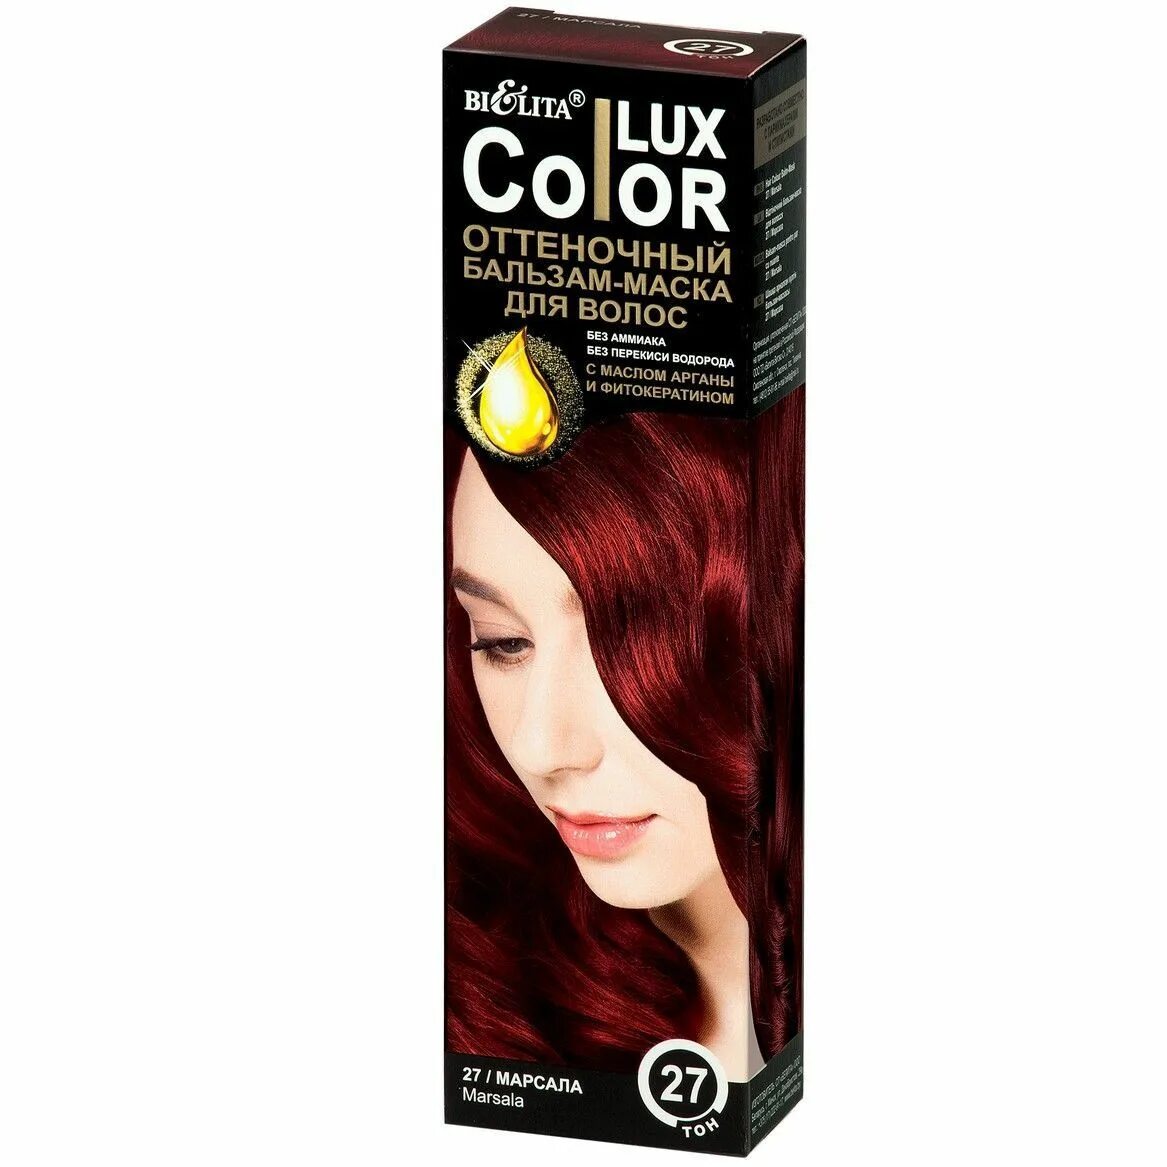 Lux Color оттеночный бальзам-маска для волос тон 27 марсала (туба 100 мл). Оттеночный бальзам Белита Color Lux. Color Lux бальзам маска оттеночная для волос тон 27 марсала 100мл. Оттеночный бальзам Белита Color Lux палитра. Оттеночный бальзам люкс